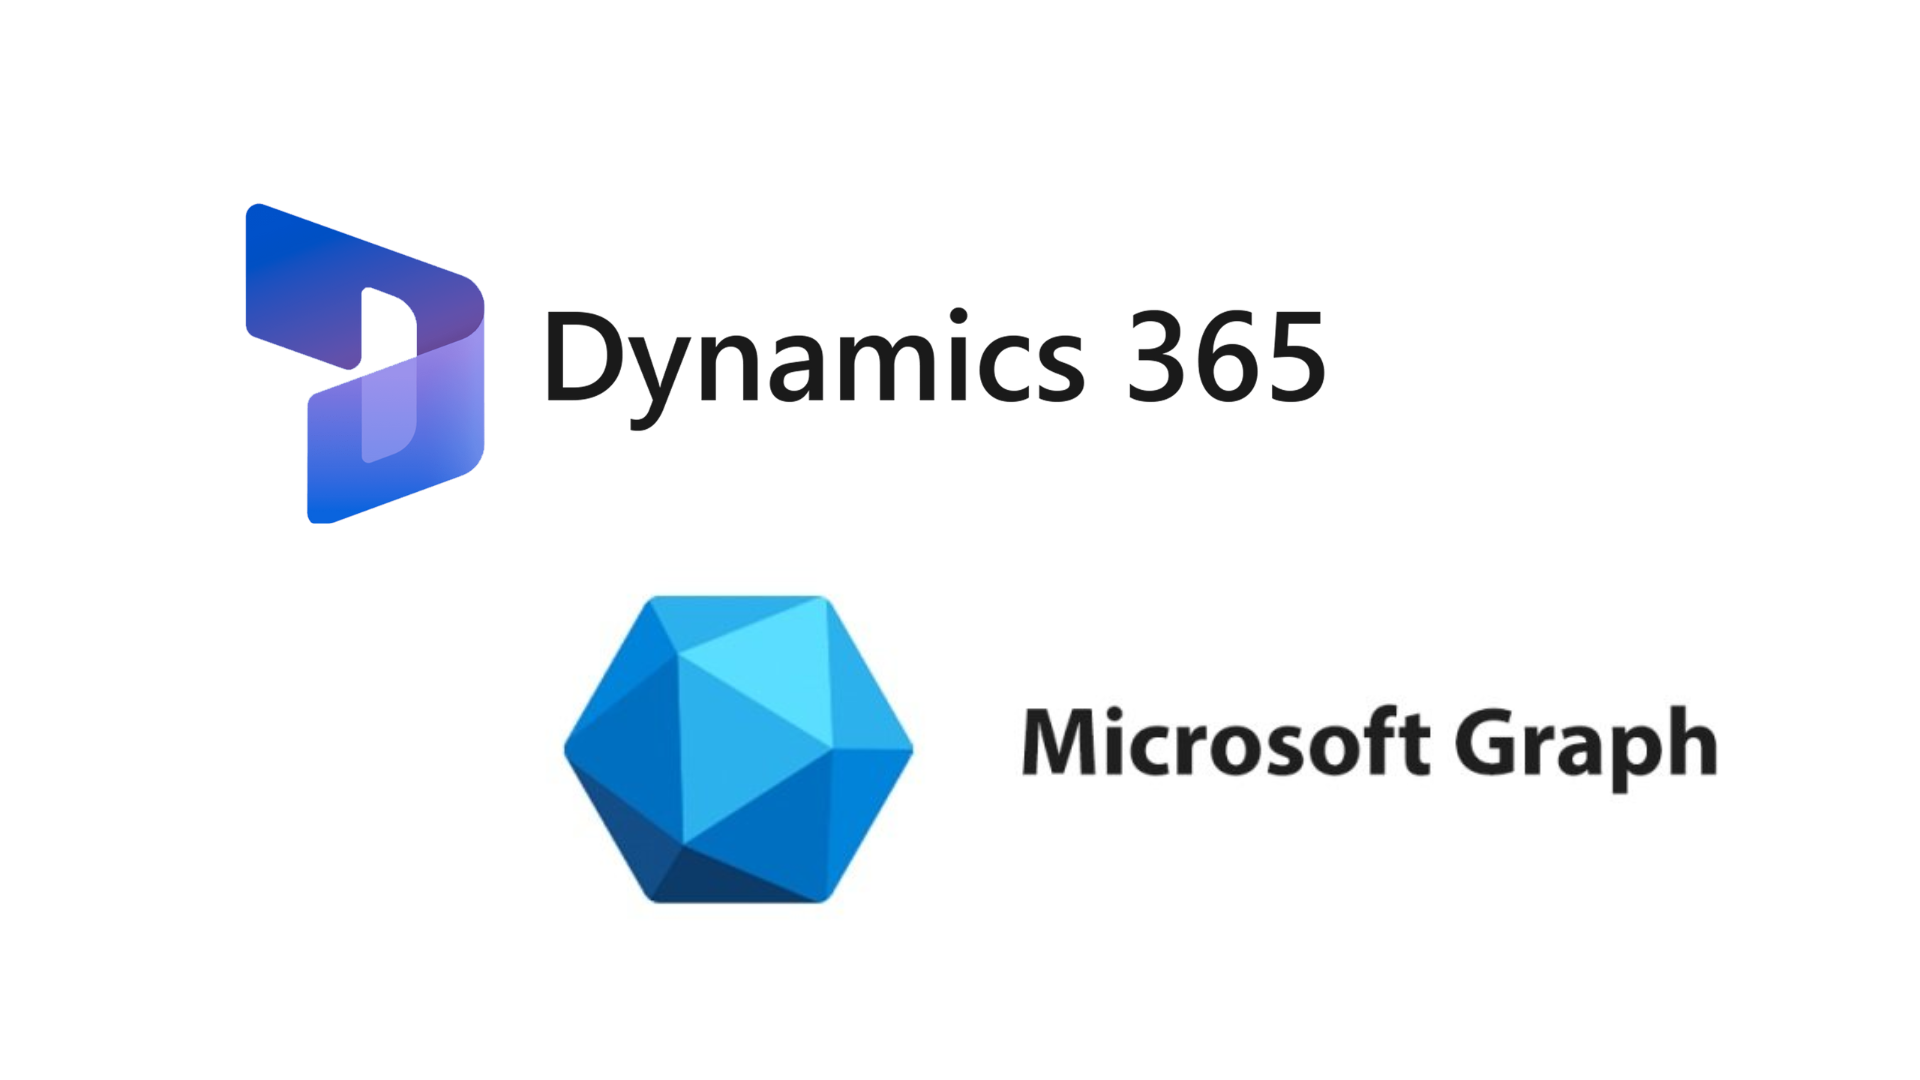 MS Dynamic 365 & MS Graph